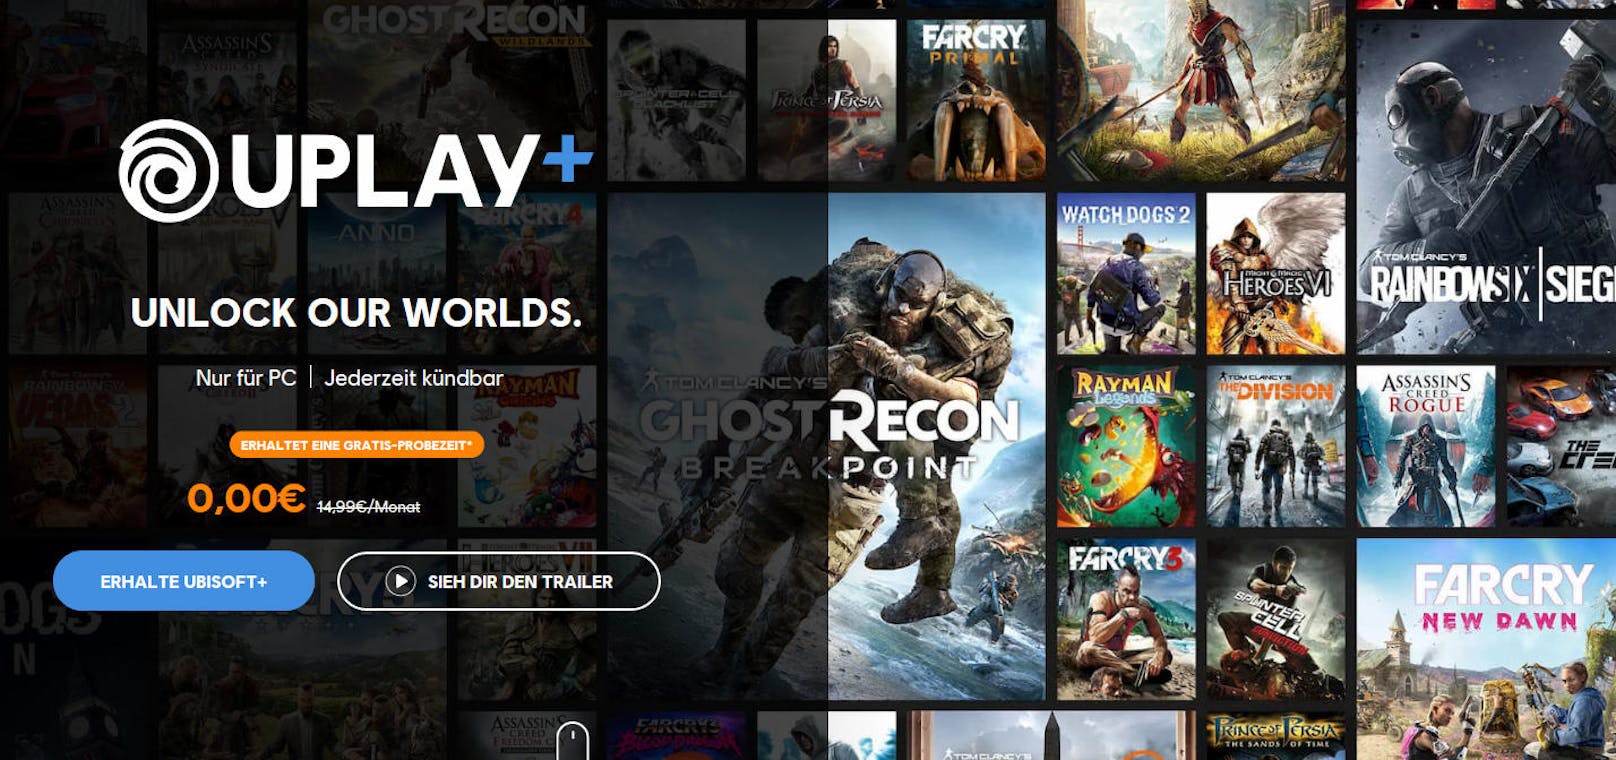 Ubisoft gab ebenso den Start seines Abo-Services UPLAY+ für PC bekannt. Für 14,99 Euro im Monat haben die Spieler unbegrenzten Zugriff auf mehr als 100 Spiele, darunter Neuerscheinungen, neueste Spiele, Backcatalog-Titel, Premium-Editionen und künftige Inhalte. Spieler, die sich jetzt anmelden, können ab sofort bis zum 30. September eine kostenlose Testversion von UPLAY+ nutzen. Um sich bei UPLAY+ anzumelden und kostenlosen Zugang zum Service bis zum 30. September zu erhalten, ist eine Registrierung unter <a href="https://store.ubi.com/de/uplayplus" target="_blank">https://store.ubi.com/de/uplayplus nötig.</a>